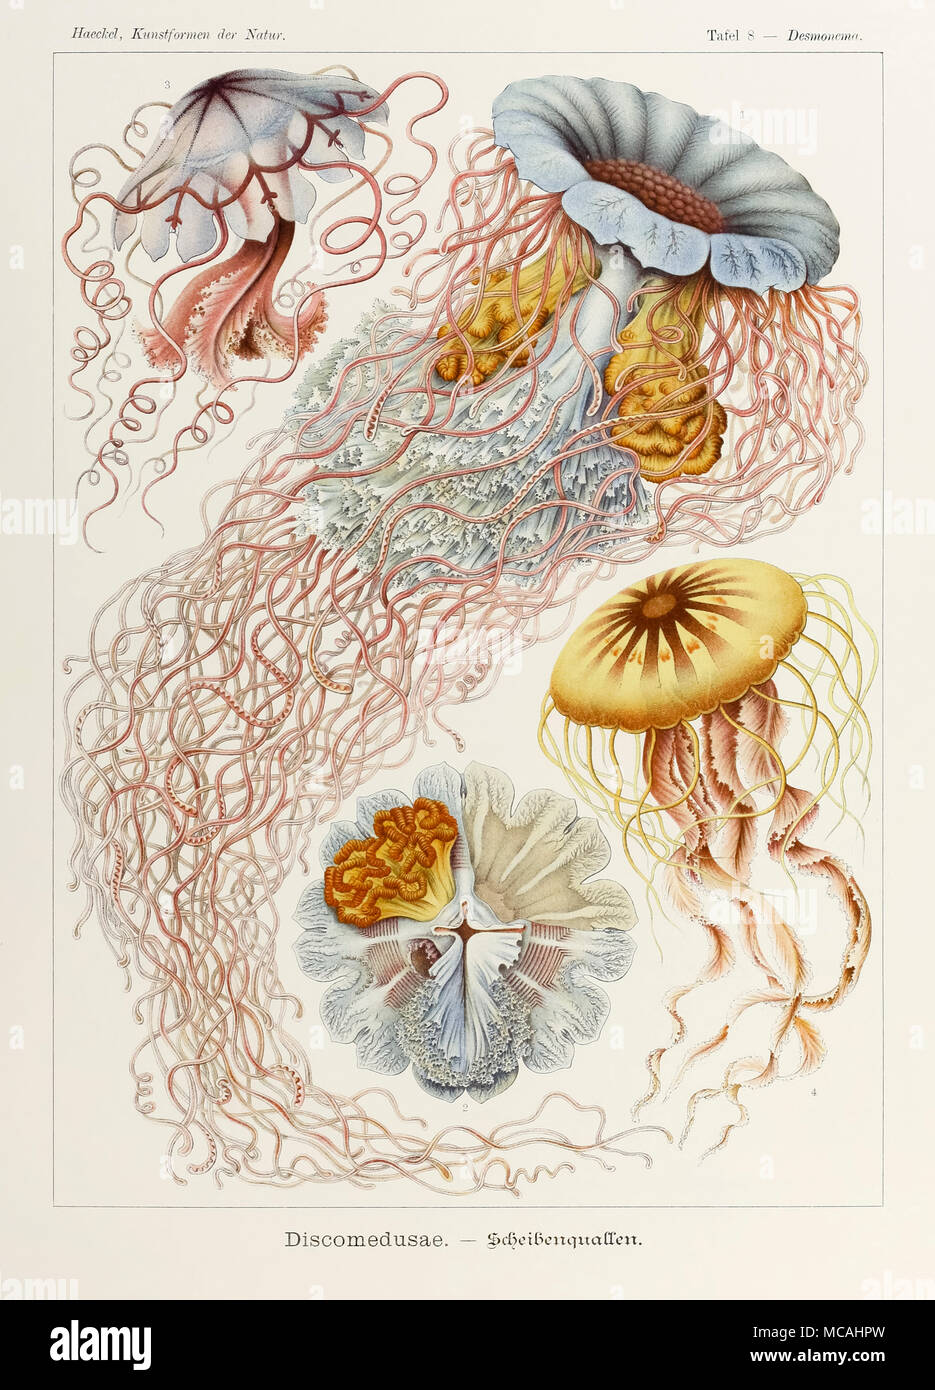 Placa 8 Desmonema Discomedusae desde "Kunstformen der Natur" (formas artísticas en la naturaleza), ilustrado por Ernst Haeckel (1834-1919). Ver más información a continuación. Foto de stock